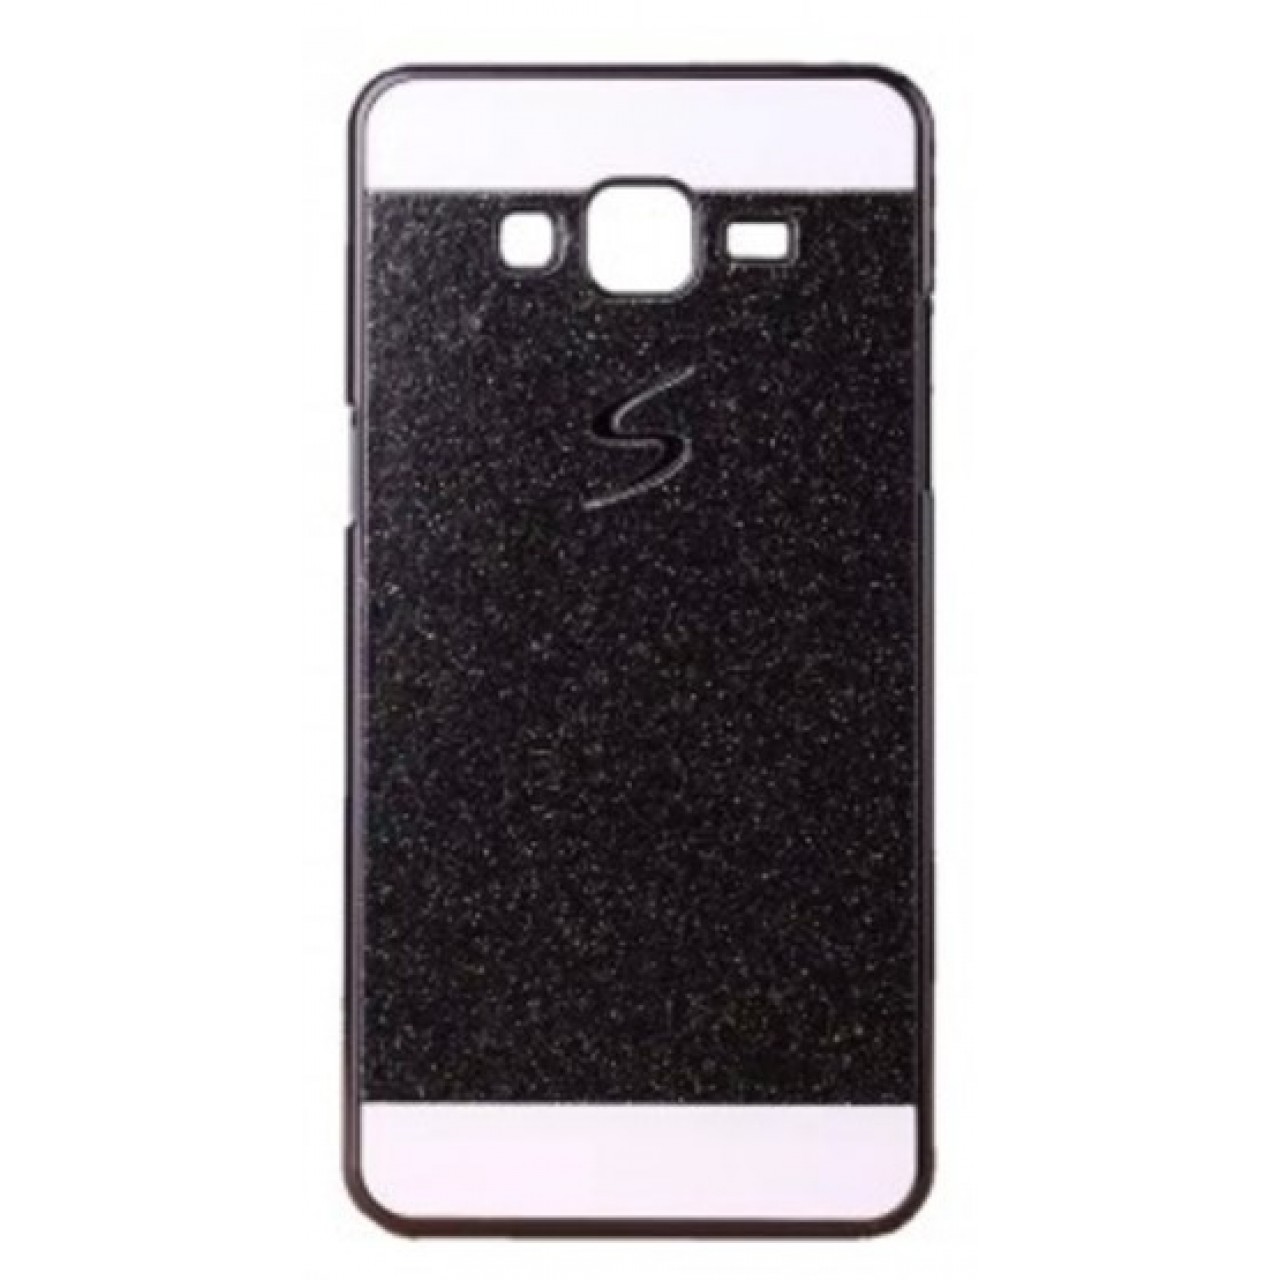 Θήκη Samsung Galaxy J5 2016 ( J510 ) S Σκληρή Πλαστική PC Glitter - 3018 - Μαύρο - OEM